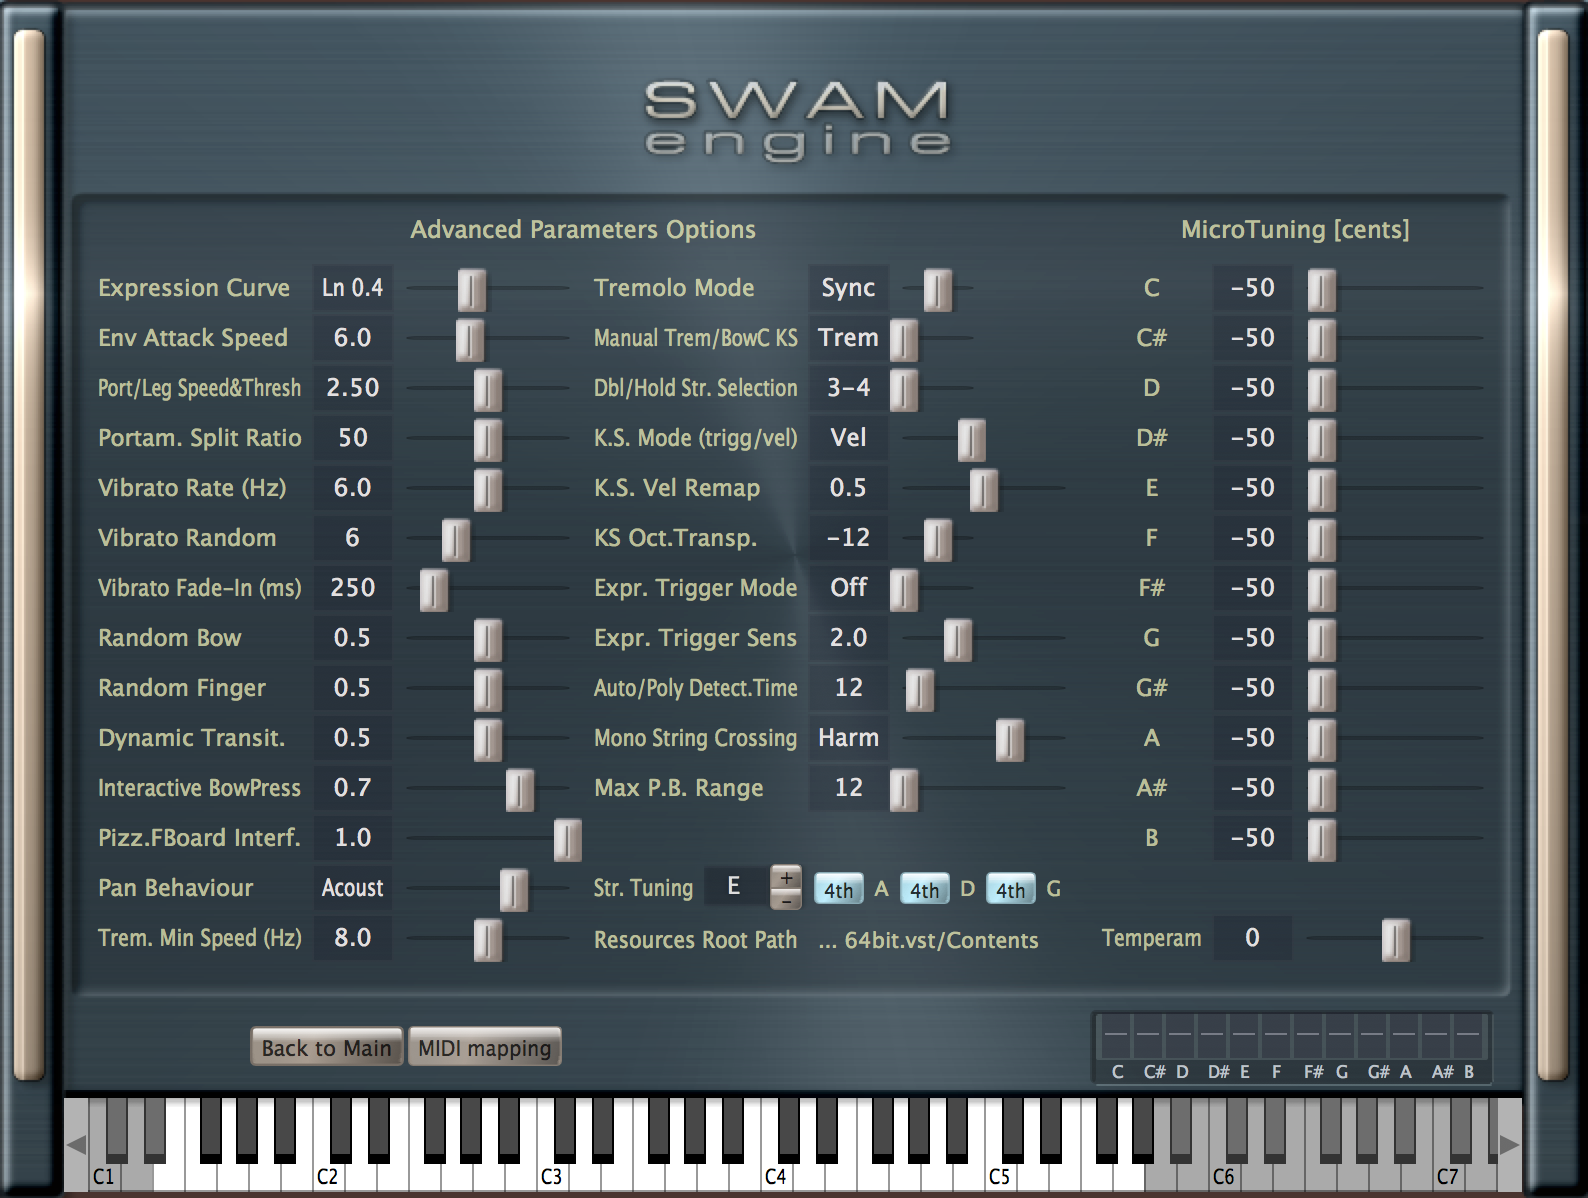 SWAM Flutes v3 Upgrade from v2